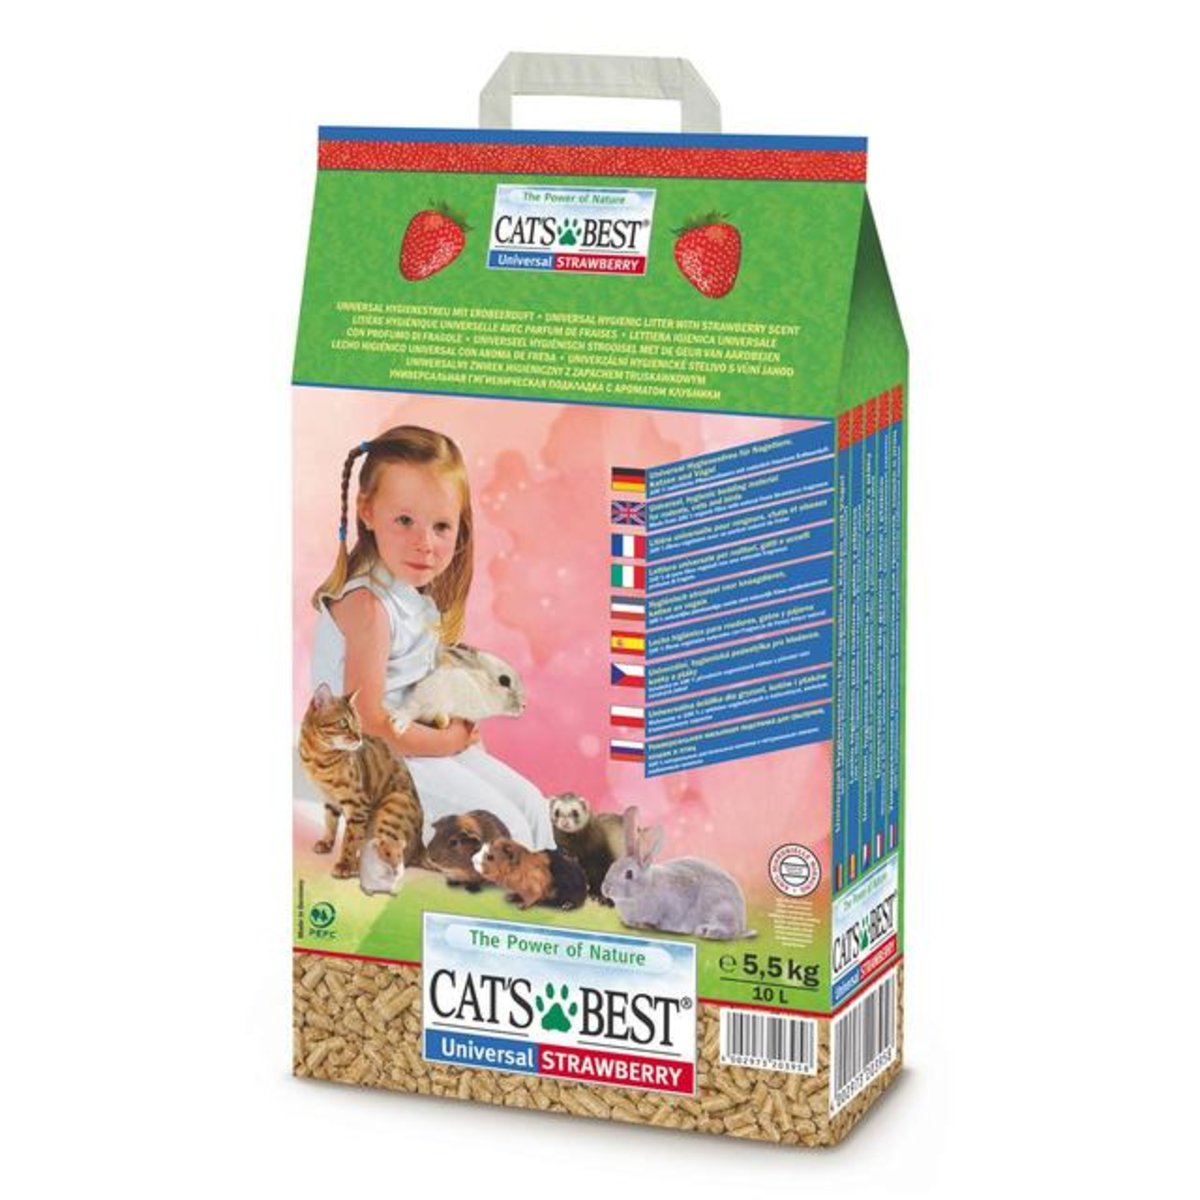 Universal Strawberry наполнитель для туалетов домашних животных, древесный, впитывающий, с запахом клубники, Cat's Best